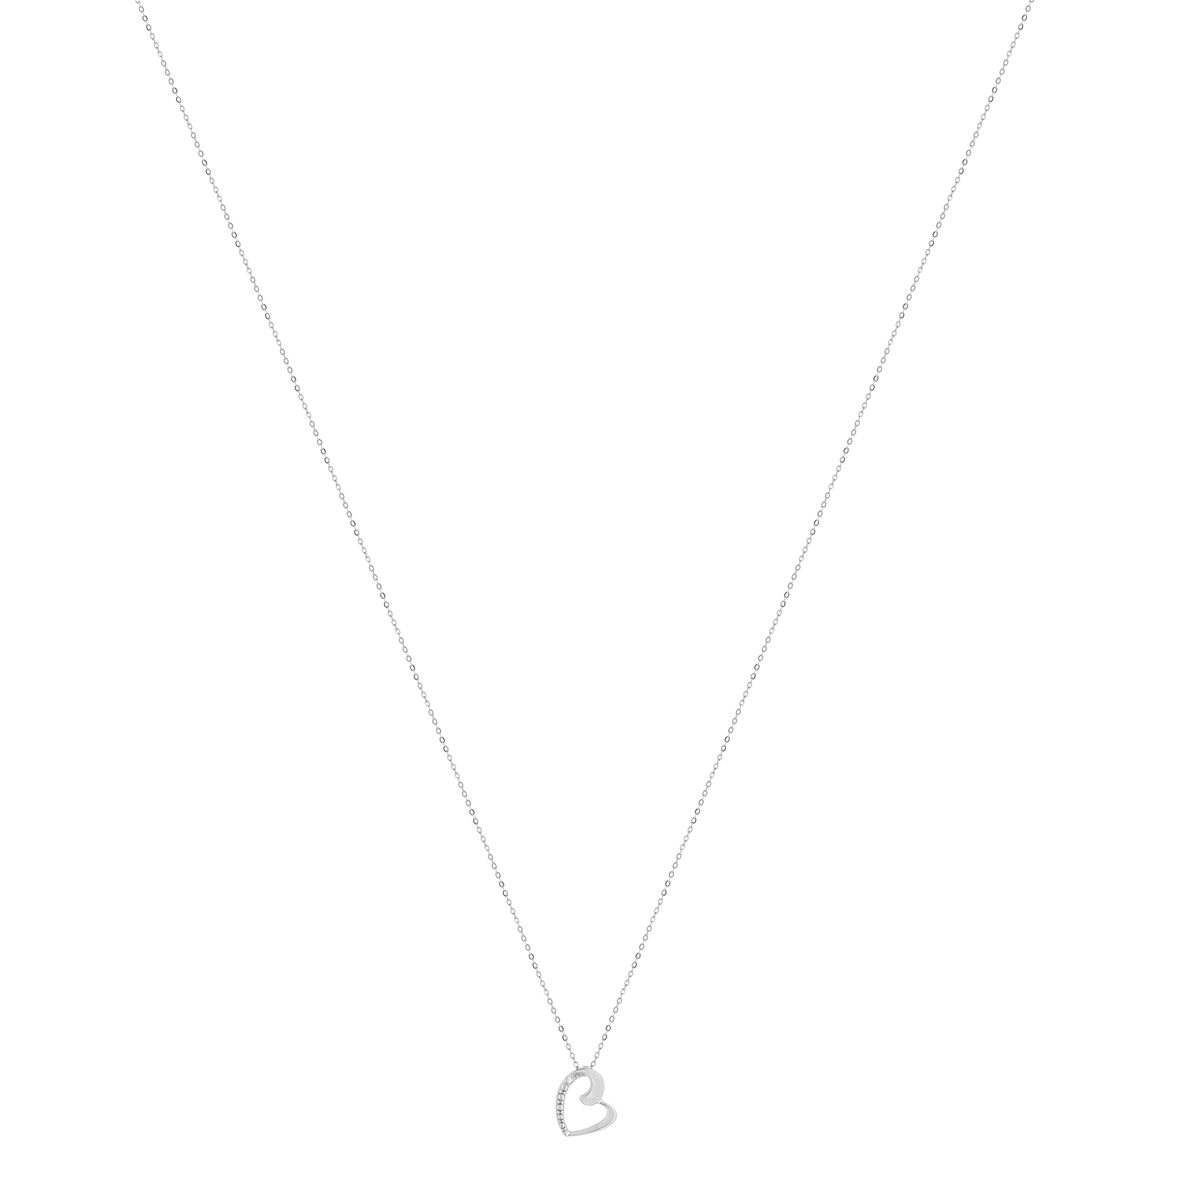 Collier or 375 blanc diamant 45 cm - vue 2